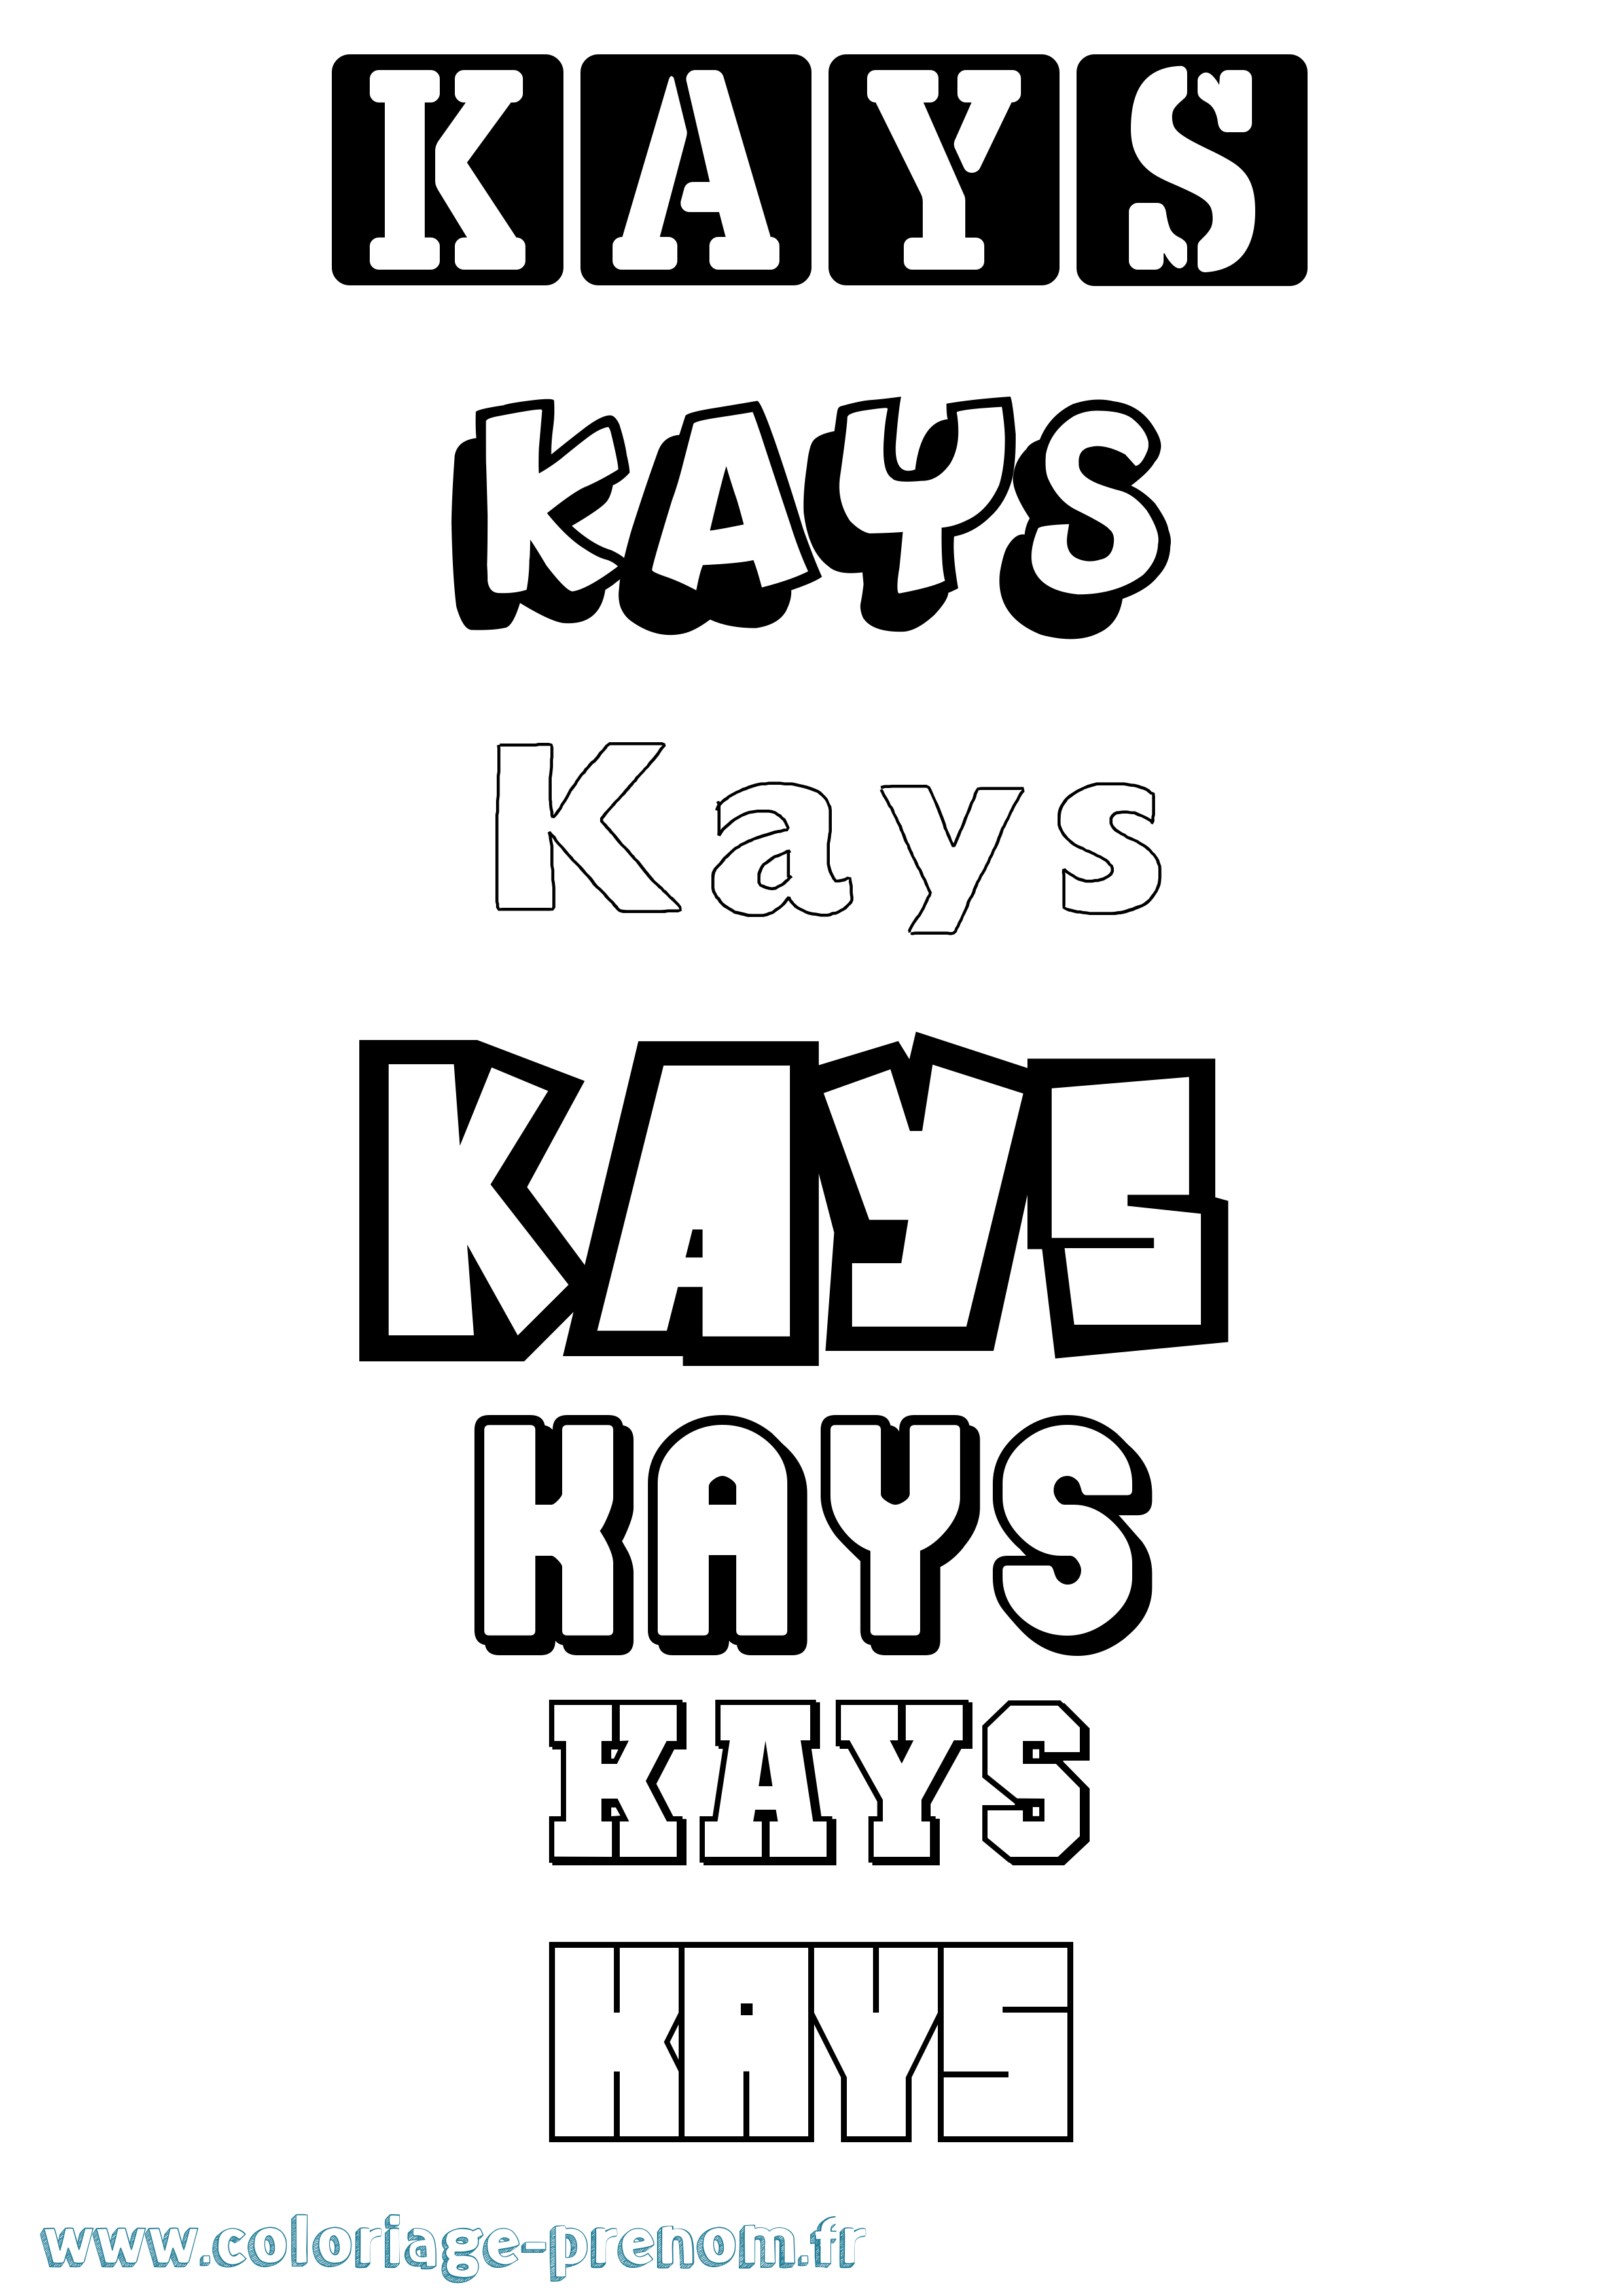 Coloriage prénom Kays